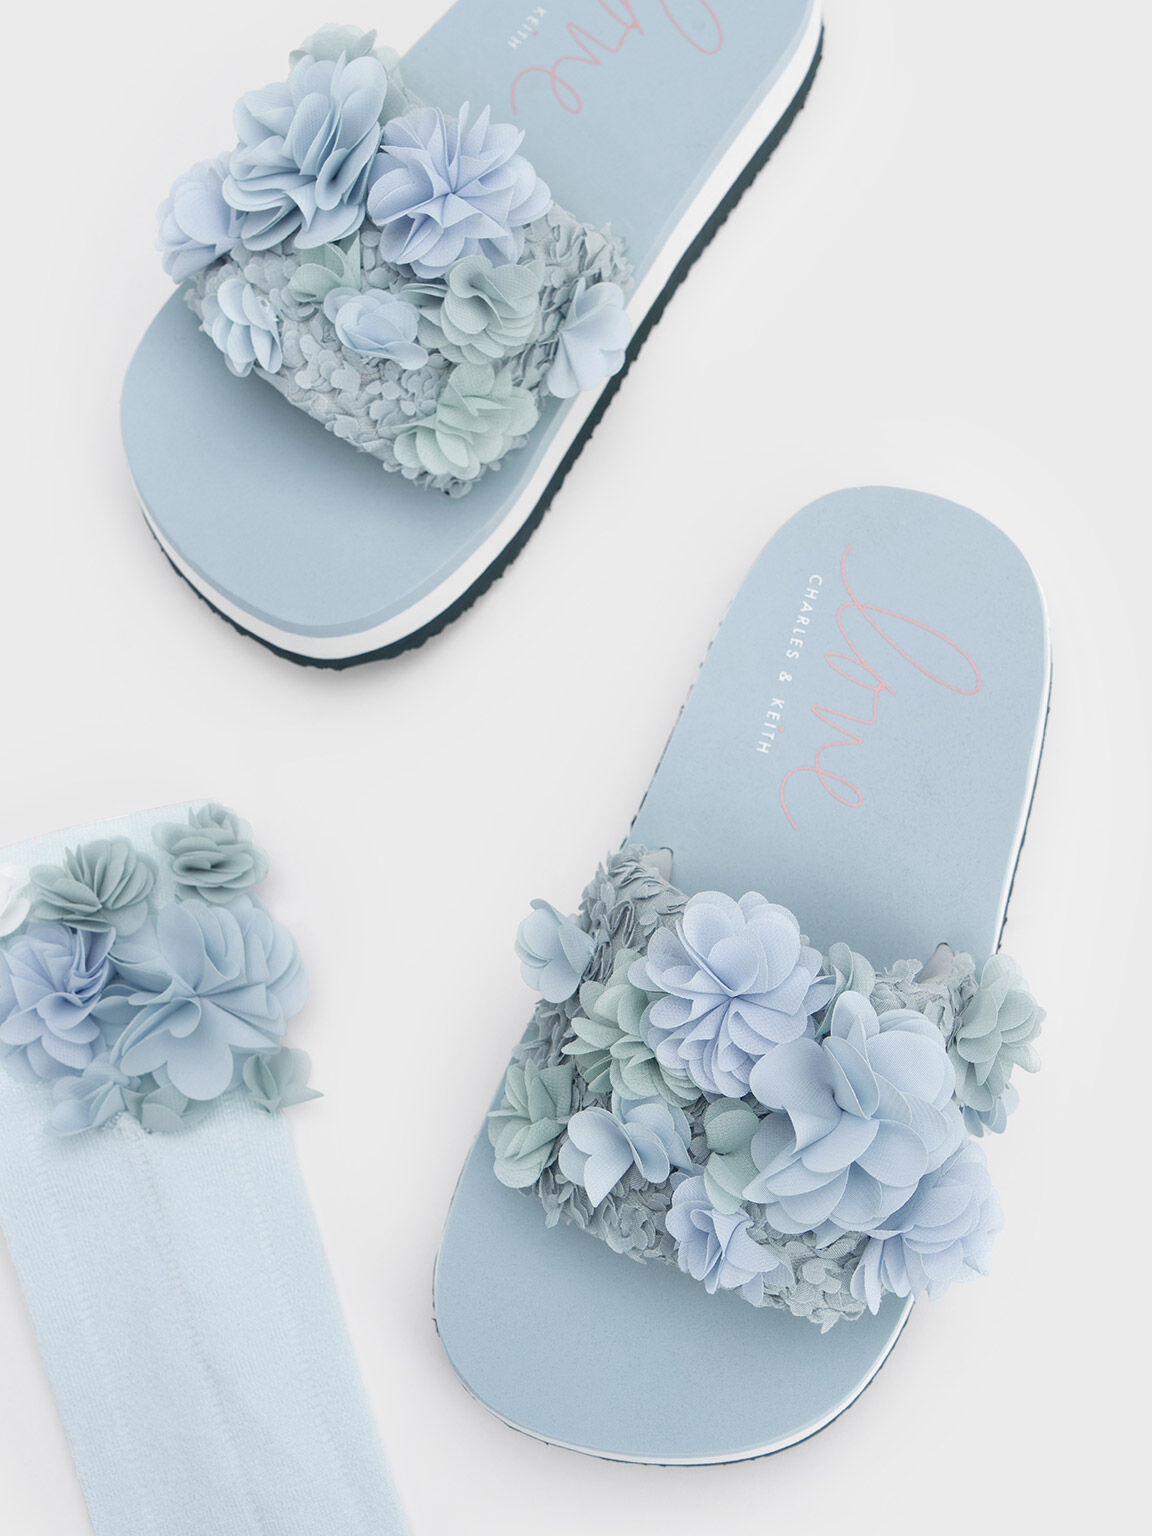 Sandal Flatform Floral Mesh, Light Blue, hi-res